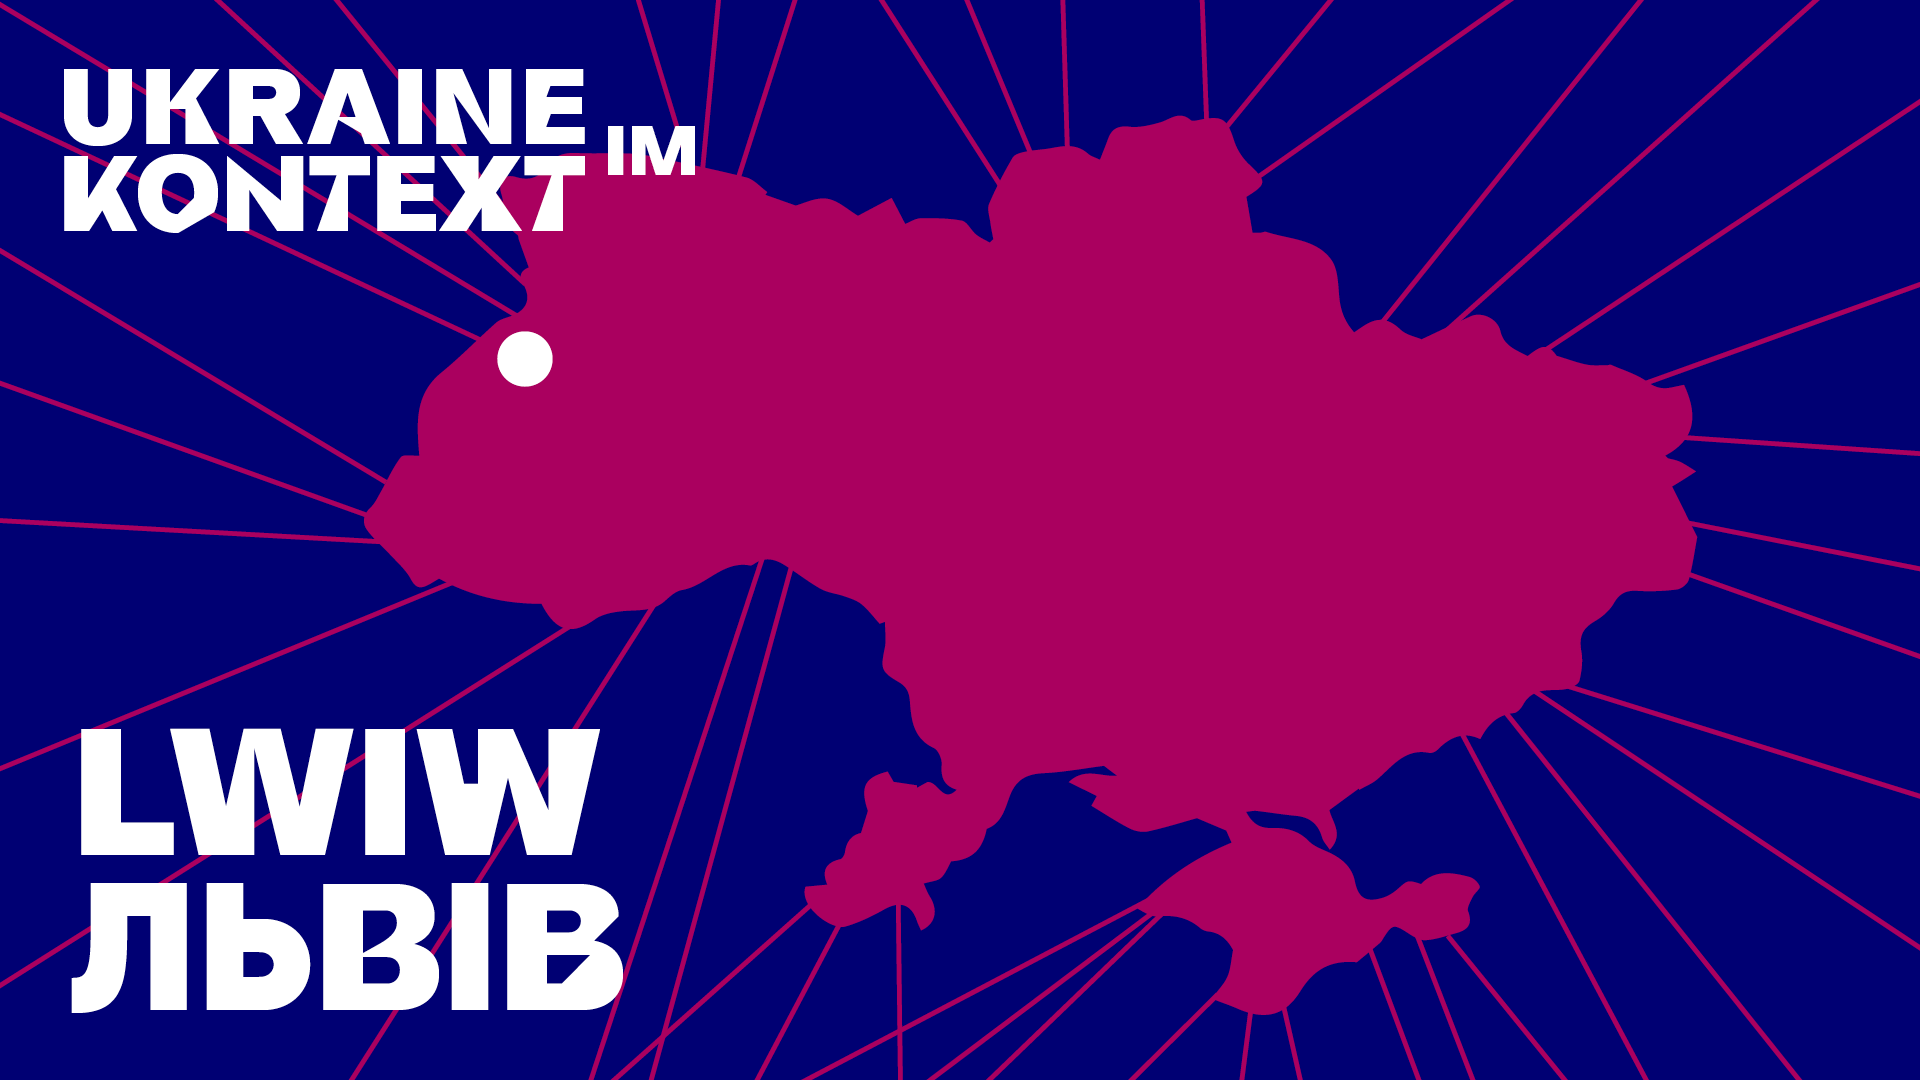 Grafik: Die Umrisse der Ukraine in berry auf dunkelblauem Hintergrund, darin der weiße Text: Ukraine im Kontext: Lwiw